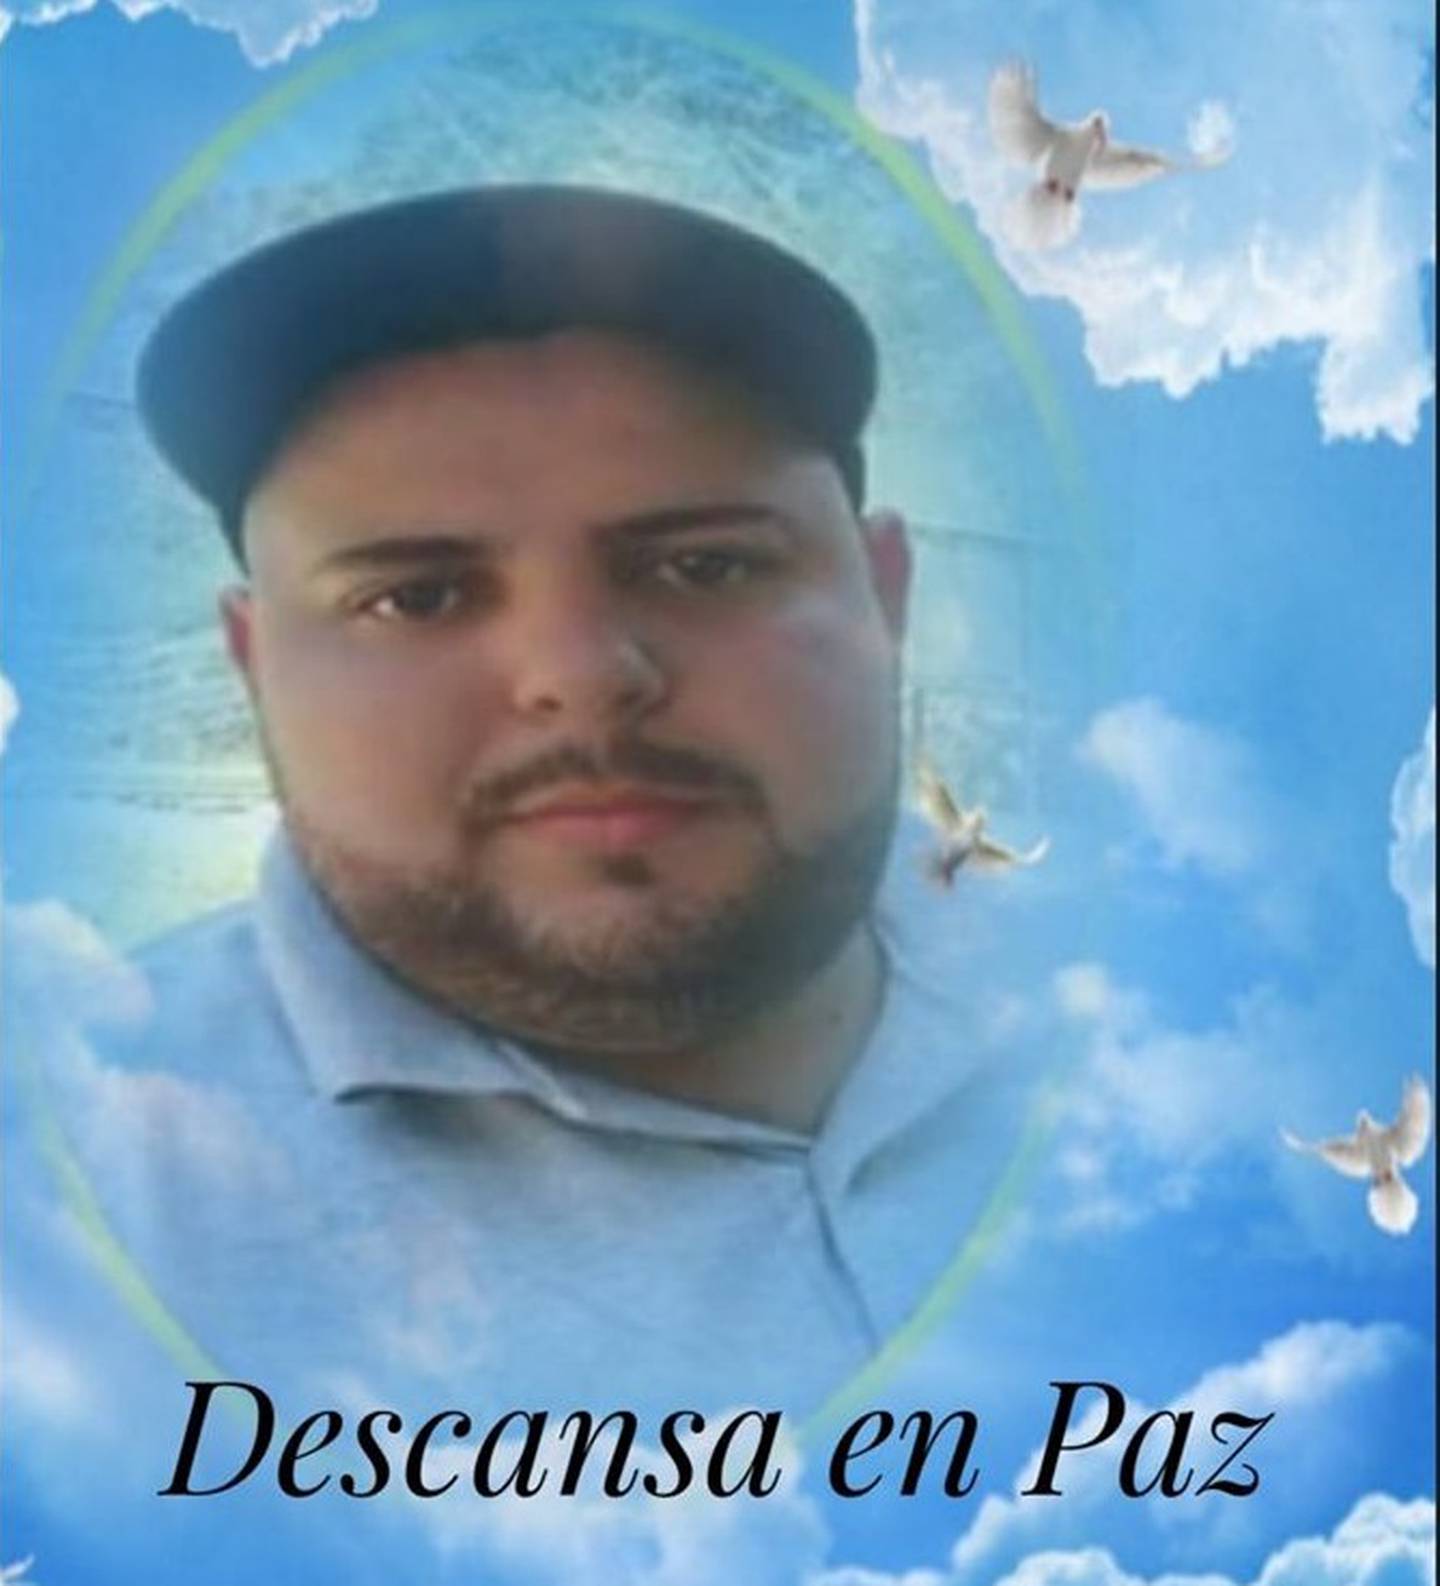 Steven Jiménez, de 29 años, quien falleció atropellado por un carro que aparentemente participaba en un pique en Curridabat. Foto tomada de Concepción Informa.